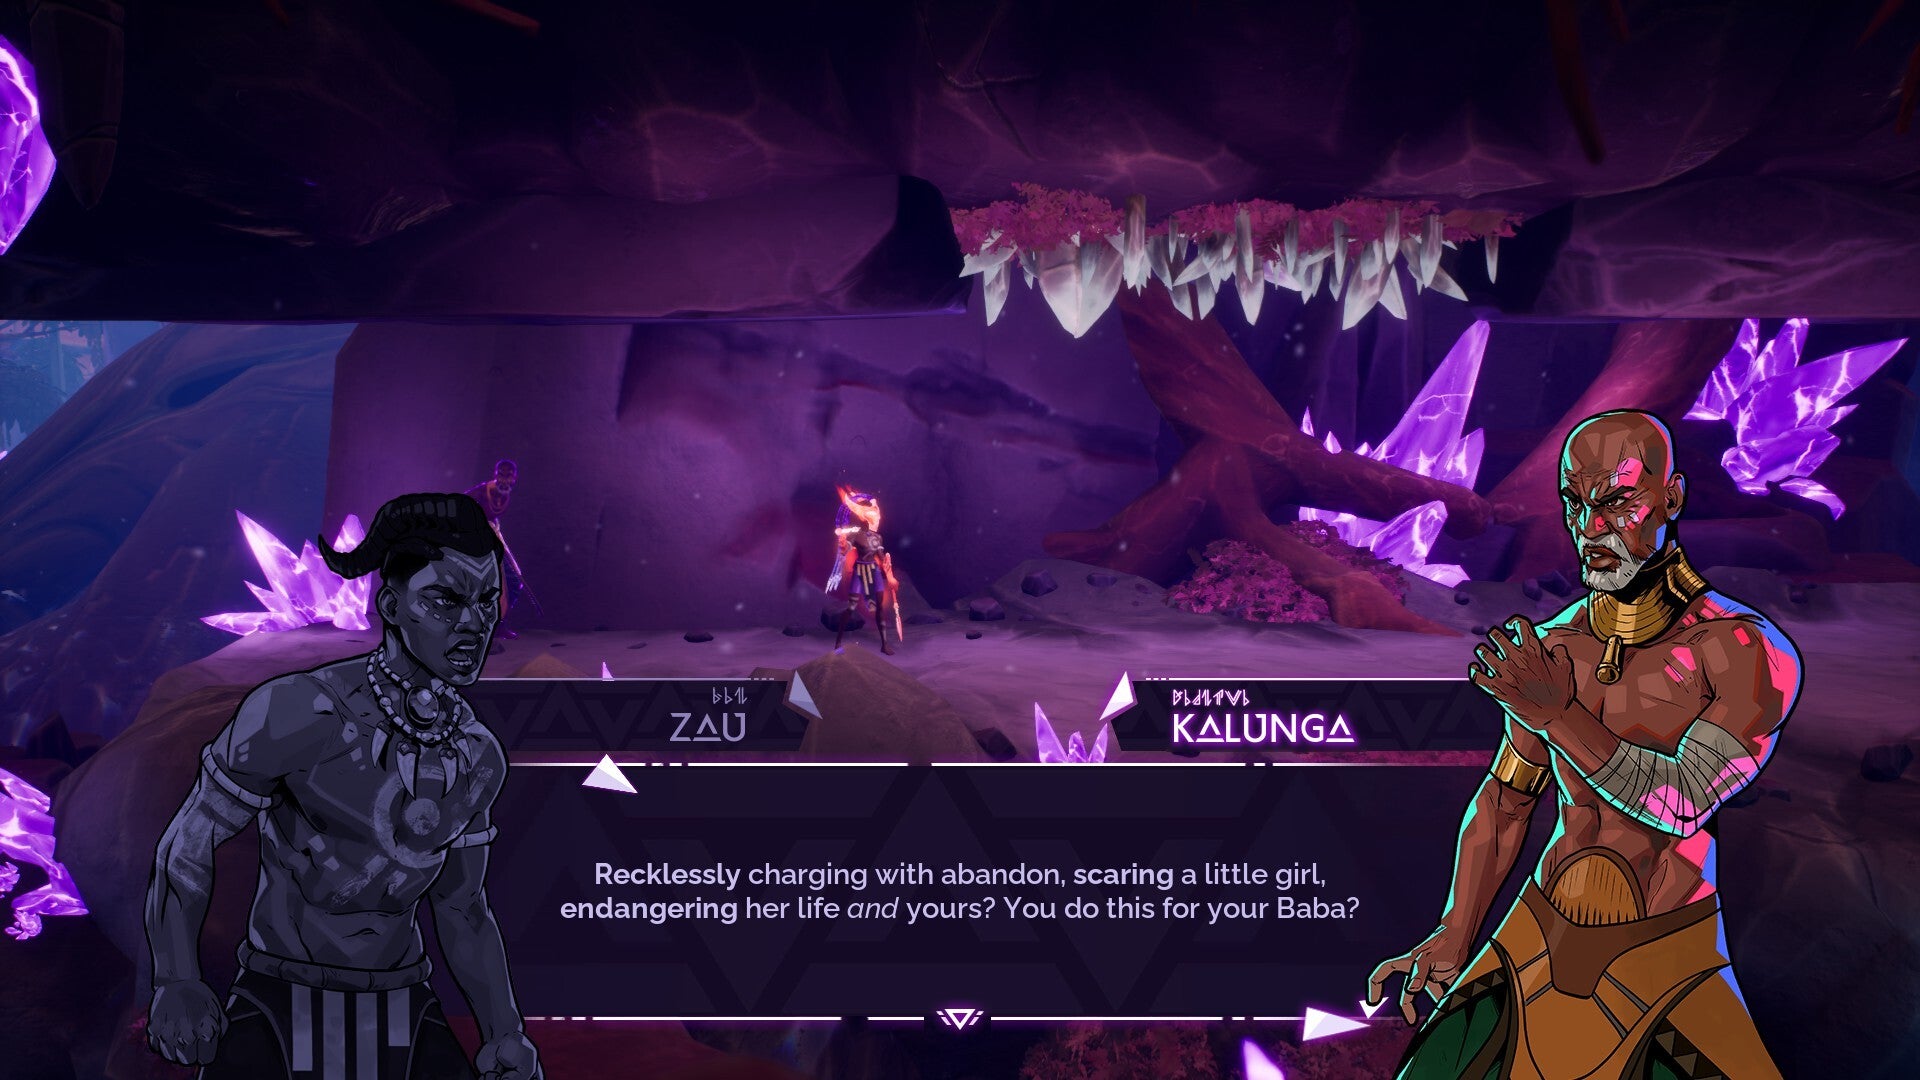 Tales of Kenzera : Capture d'écran de Zau conversant avec son père dans un tunnel rose infusé de gemmes